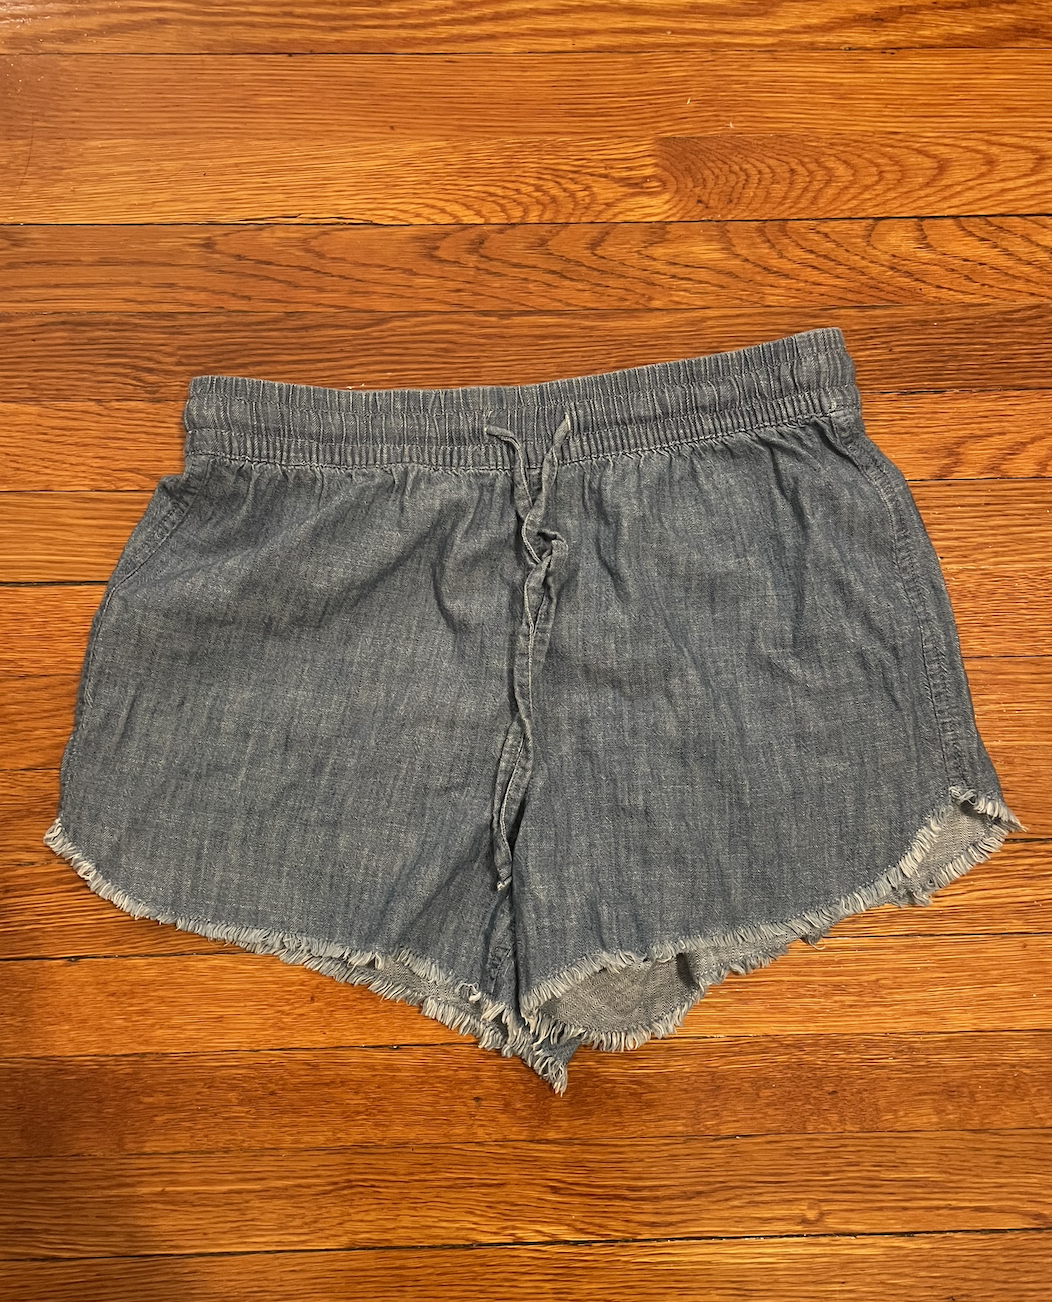 Gap shorts - size small - women's denim shorts - drawstring shorts